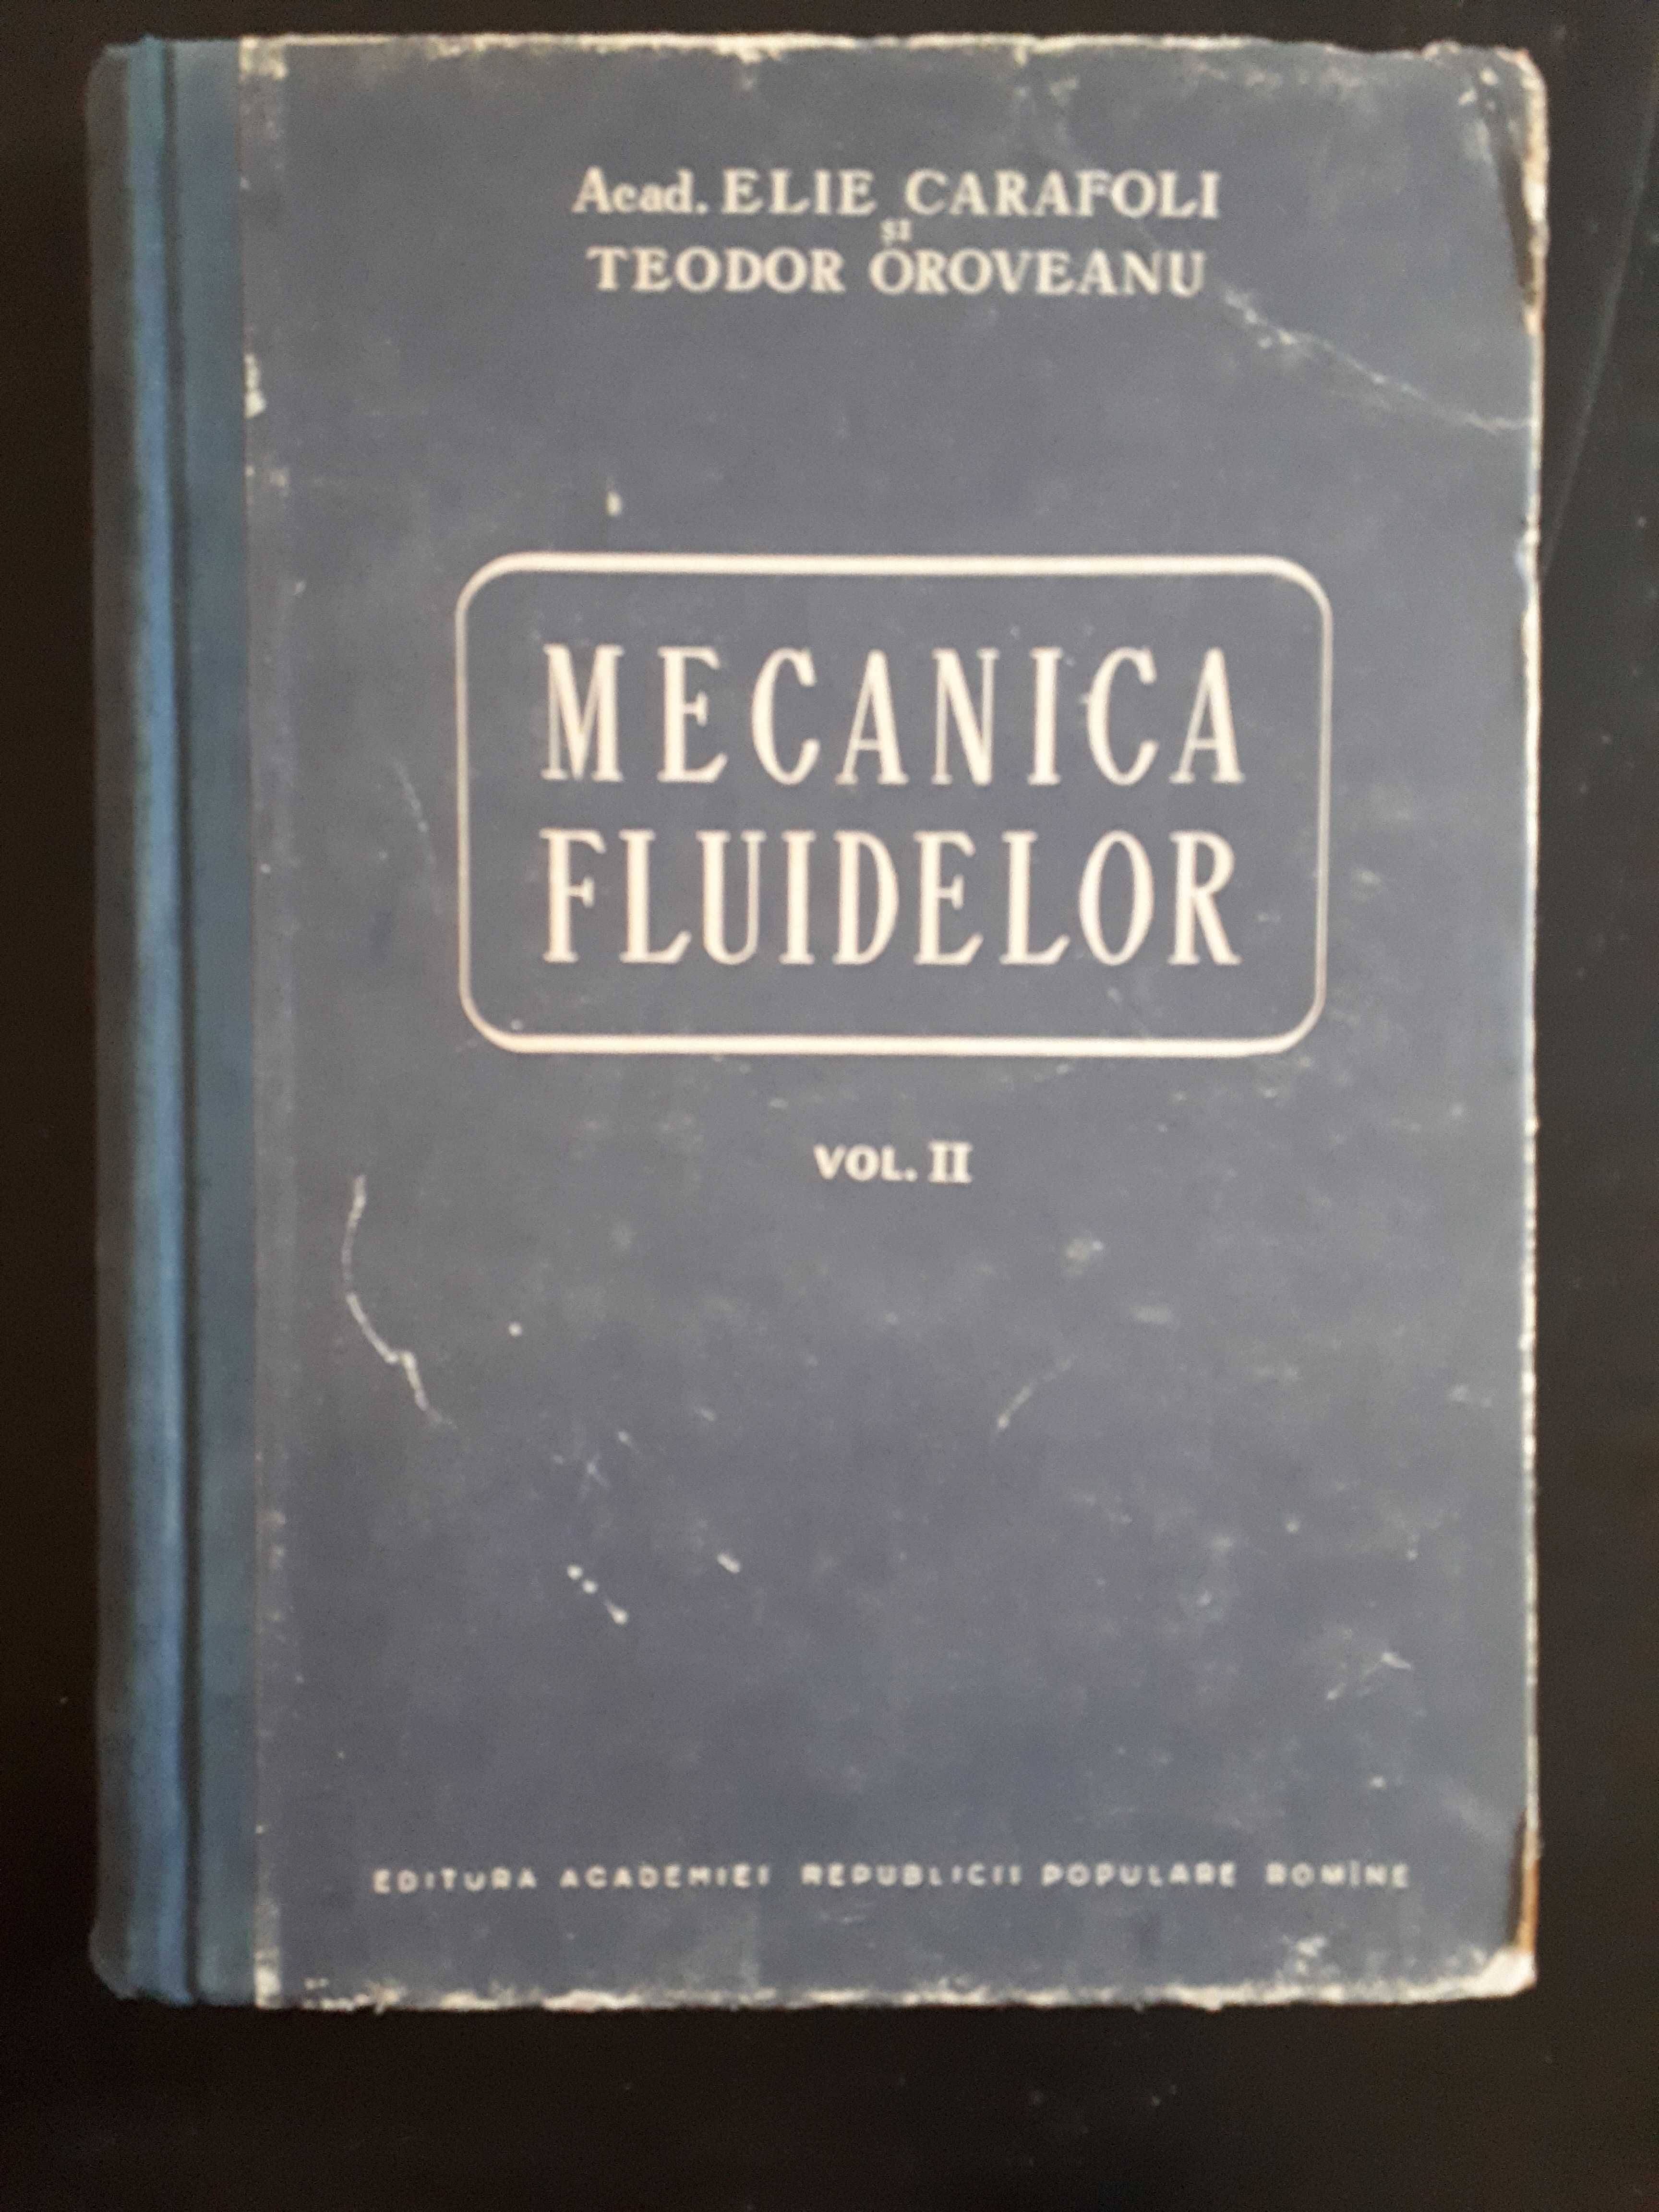 Mecanica fluidelor, vol. II, Elie Carafoli, Teodor Oroveanu